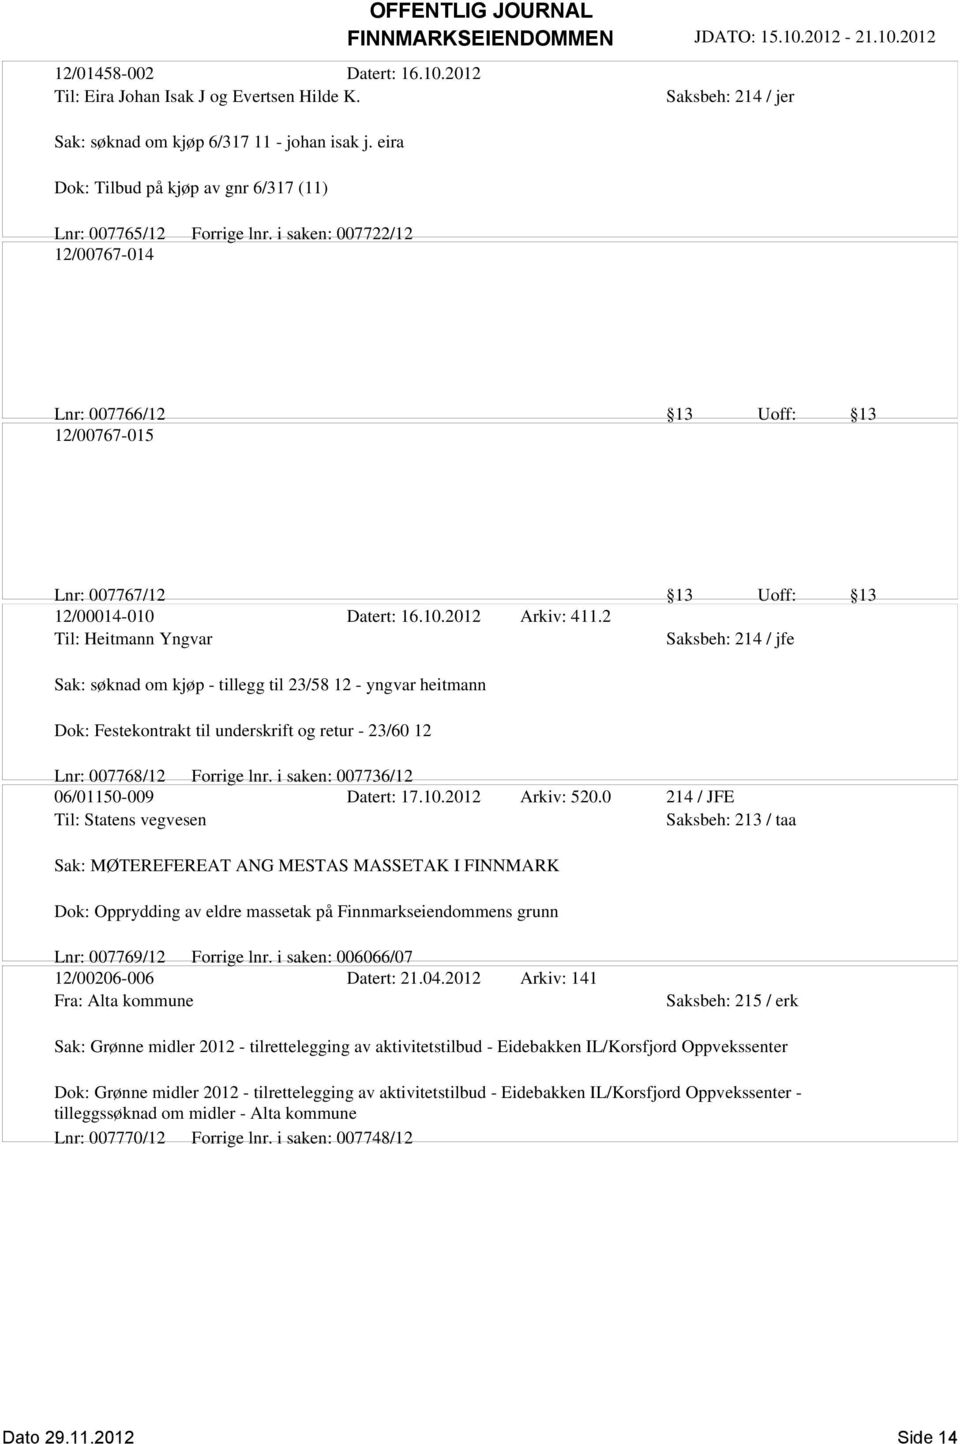 2 Til: Heitmann Yngvar Sak: søknad om kjøp - tillegg til 23/58 12 - yngvar heitmann Dok: Festekontrakt til underskrift og retur - 23/60 12 Lnr: 007768/12 Forrige lnr.